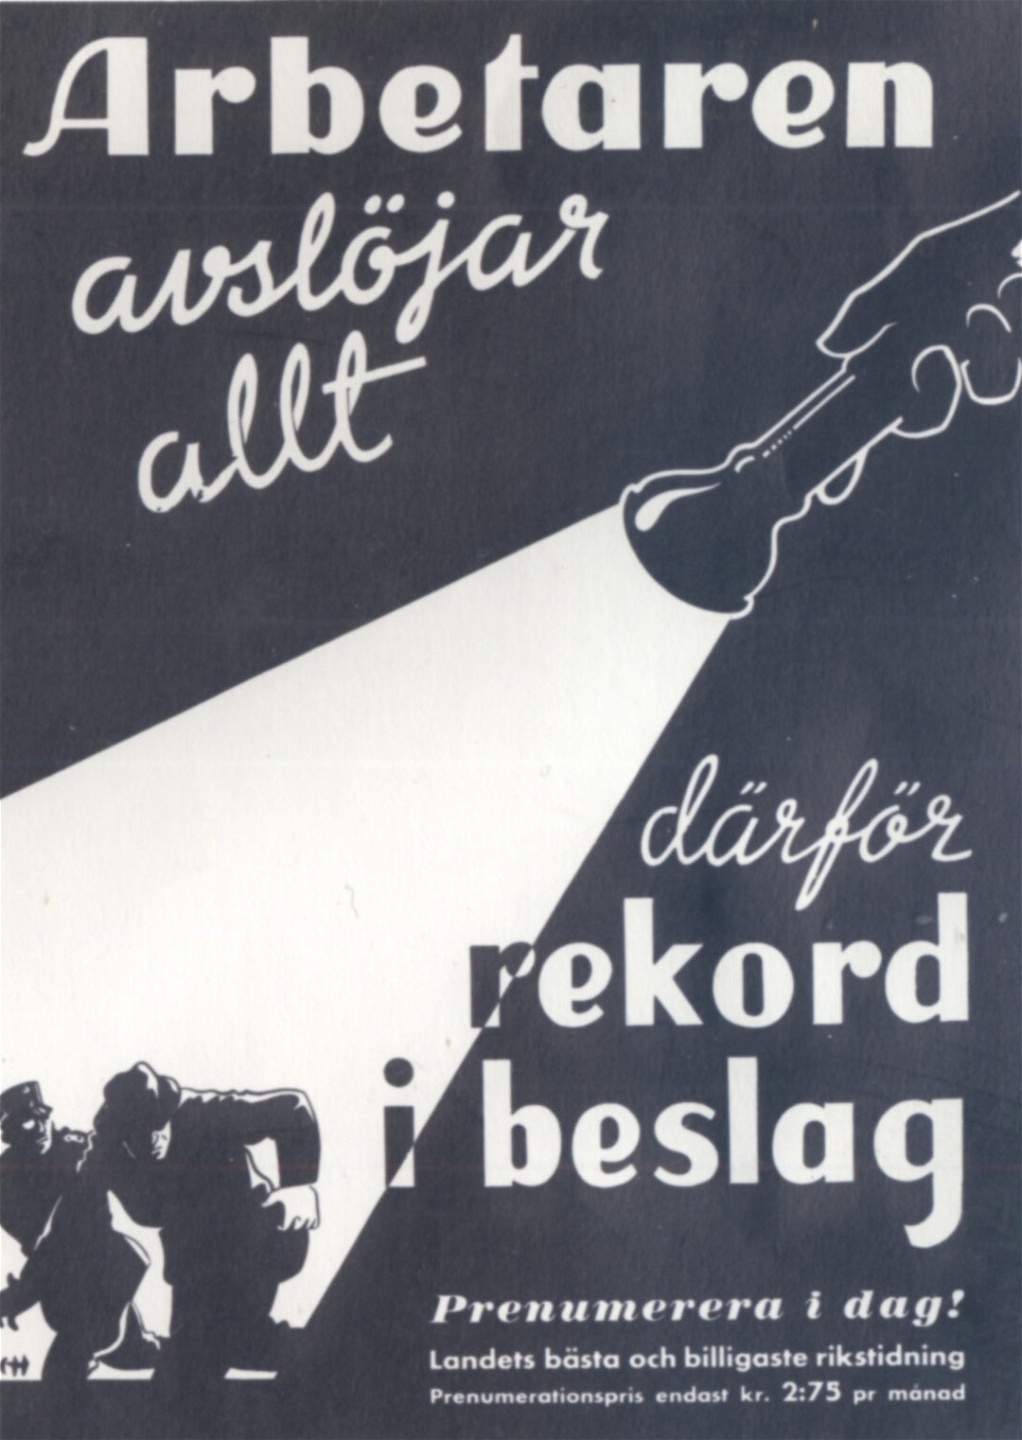 Löpsedel för Arbetaren 1942.